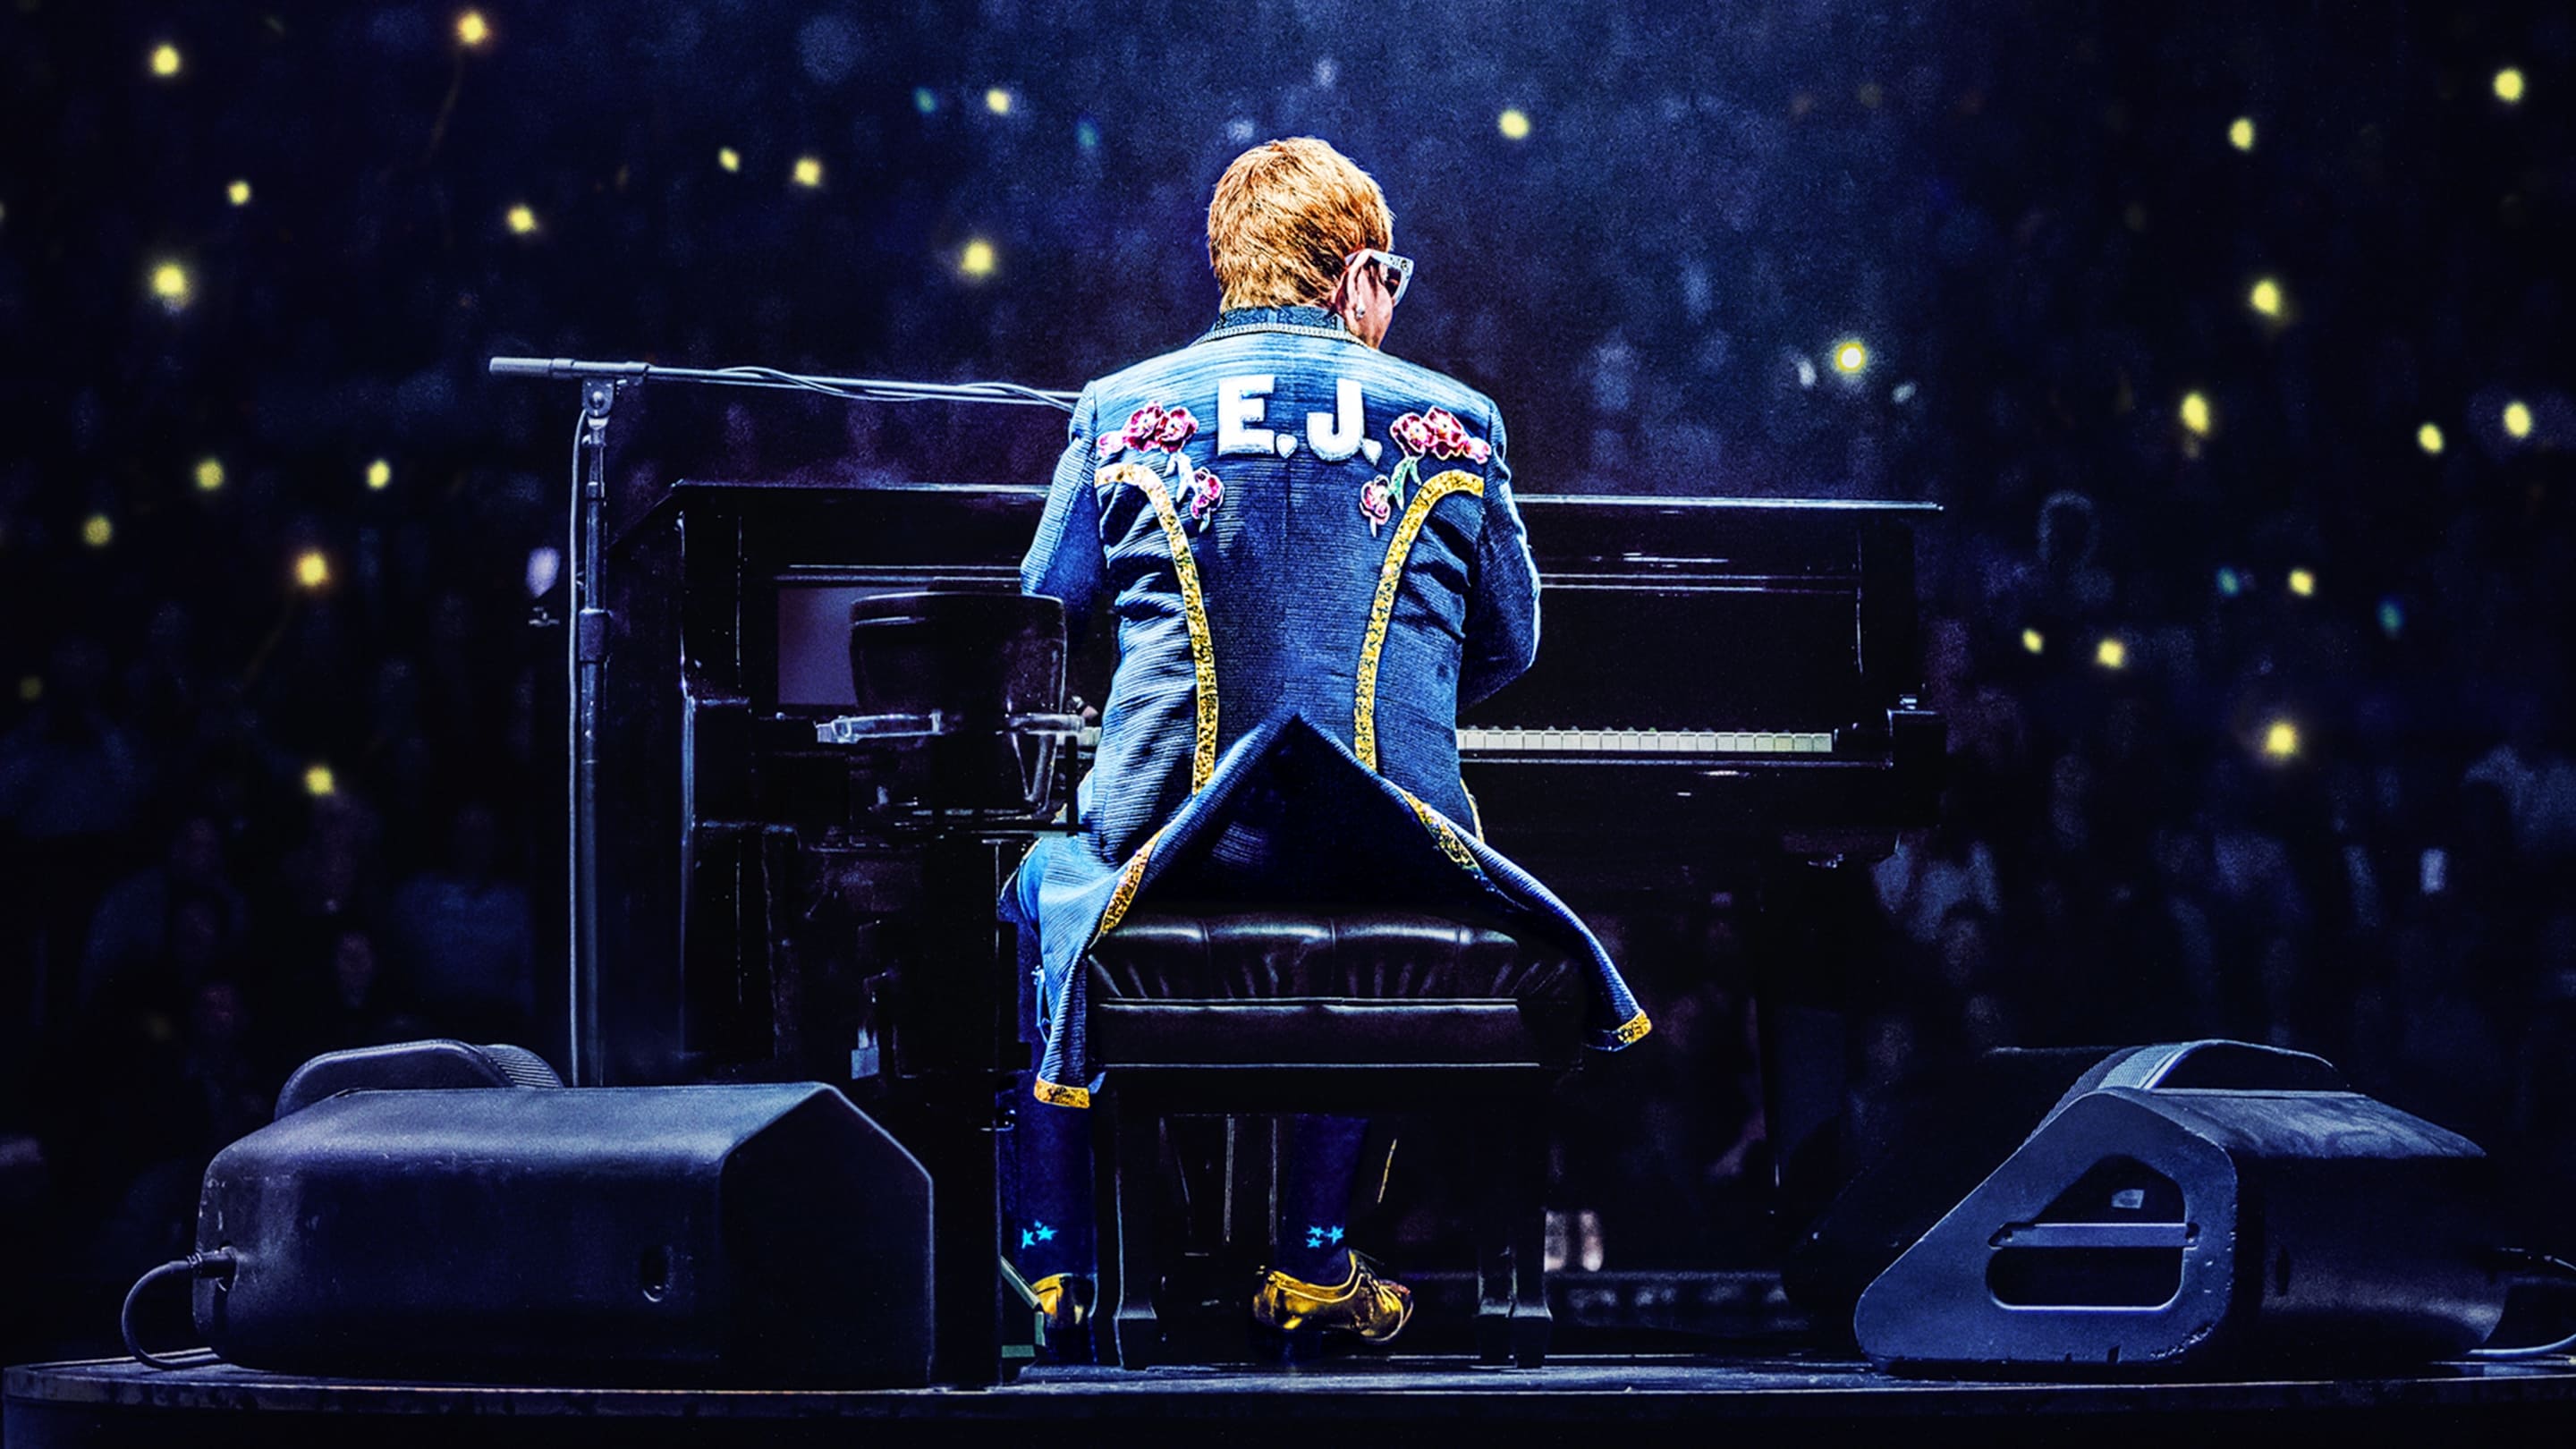 Elton John Live: Farewell from Dodger Stadium 2022 Soap2Day